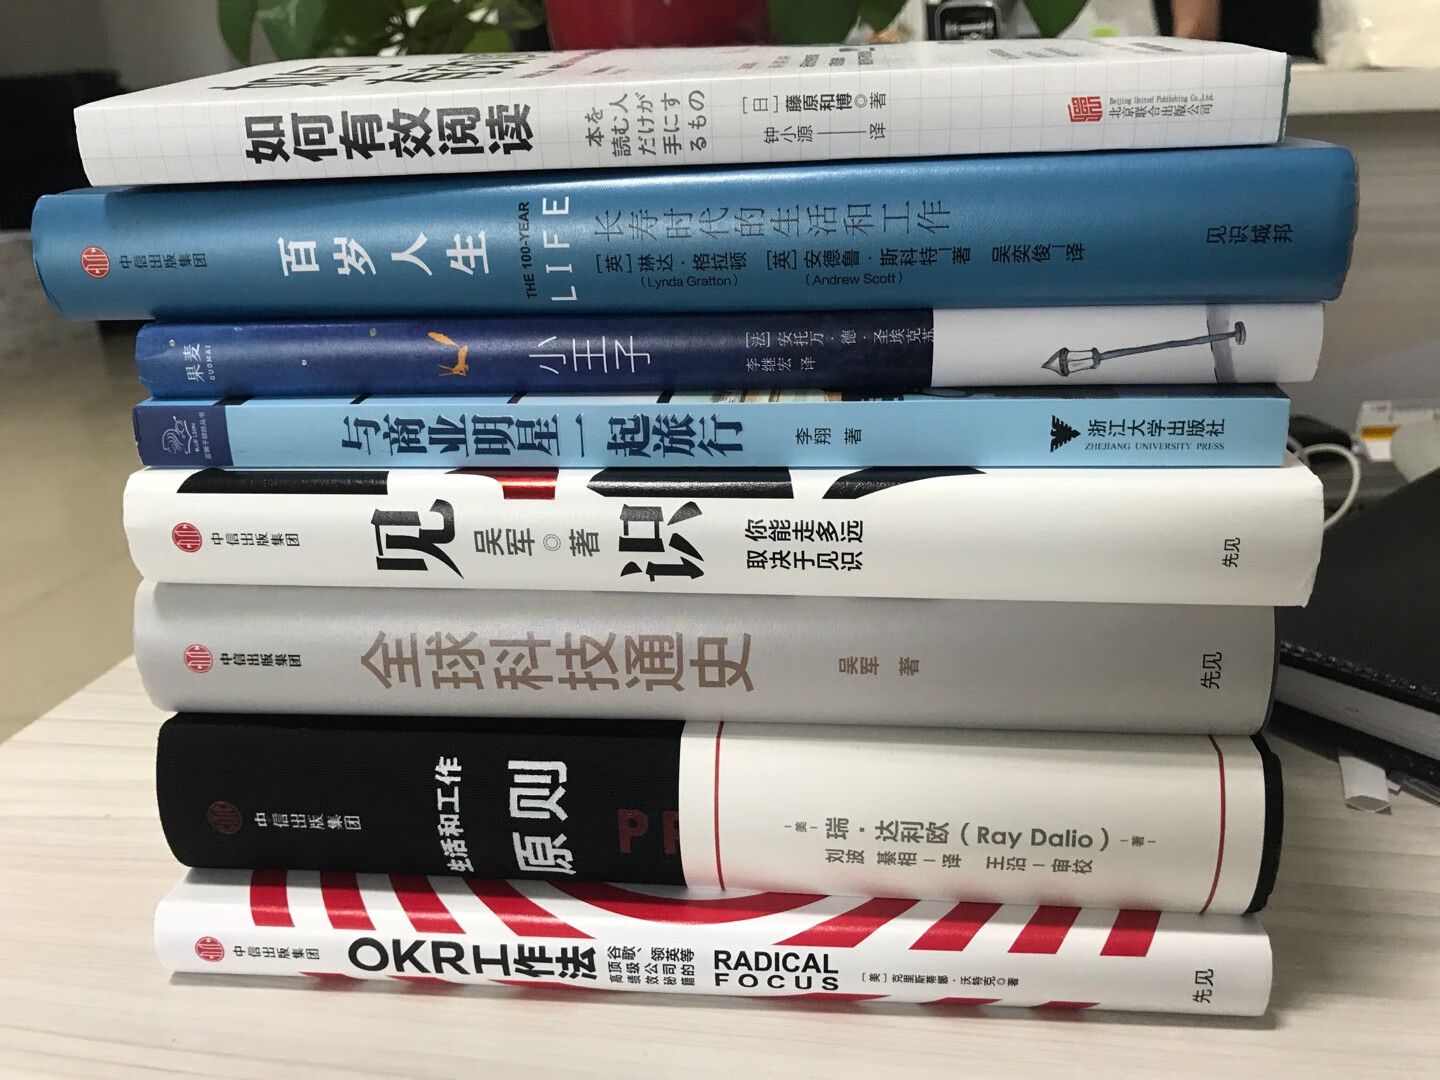 在得到上买了吴军博士的课很受启发。正好趁着暑假活动，买本吴军博士的书看看。